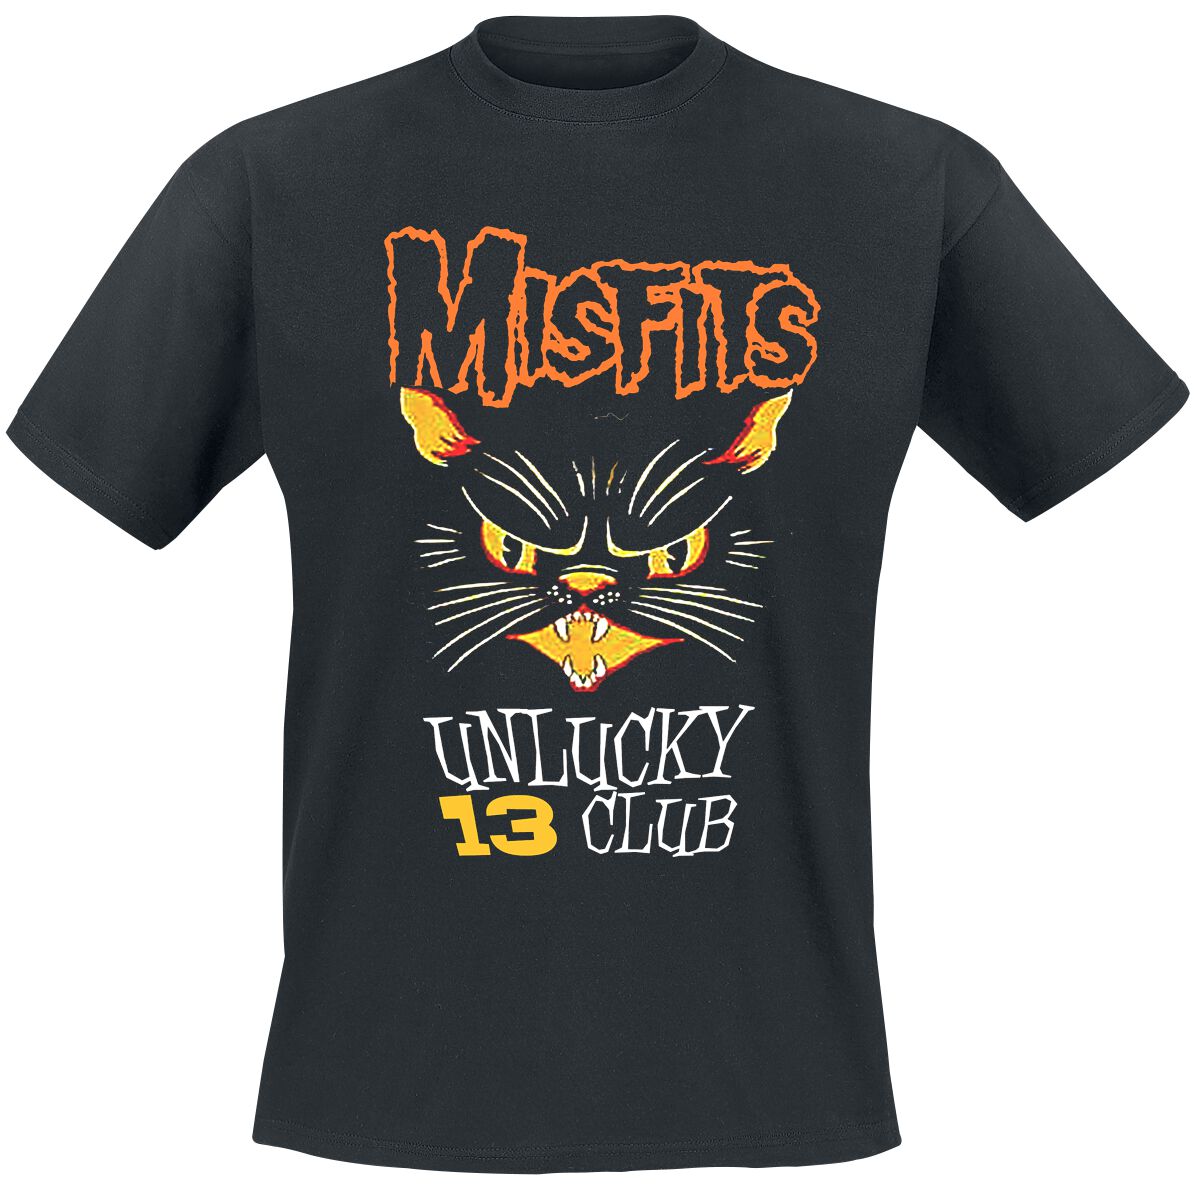 Misfits T-Shirt - Unlucky Club - S bis 3XL - für Männer - Größe S - schwarz  - Lizenziertes Merchandise!